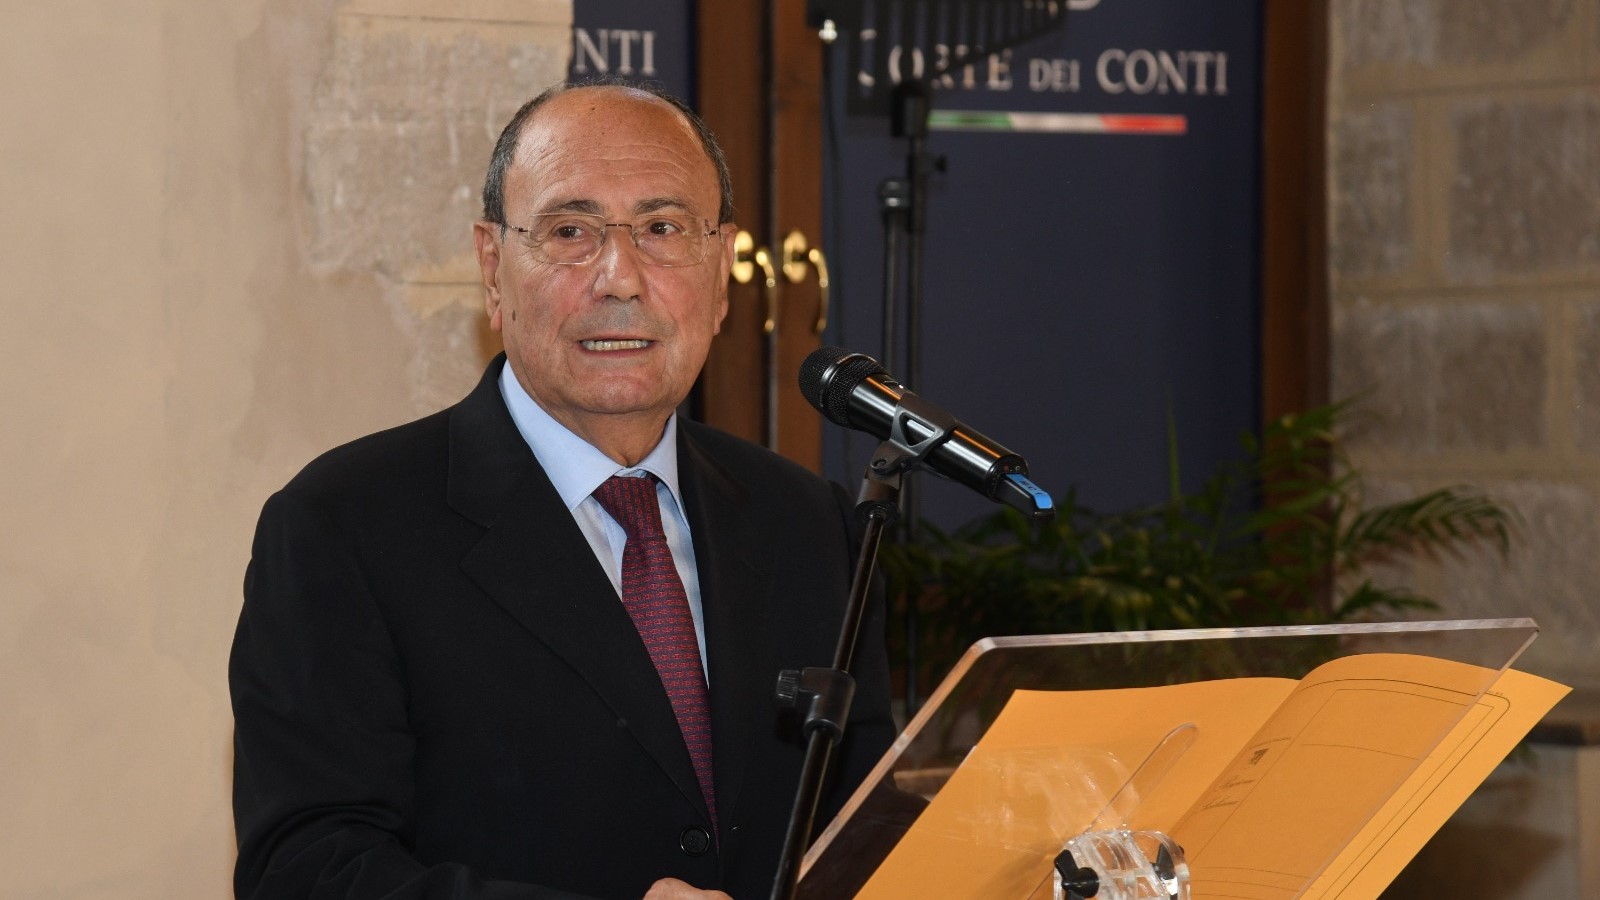 Digitalizzazione in Sicilia: dal 1 gennaio online i ricorsi straordinari al Presidente della regione